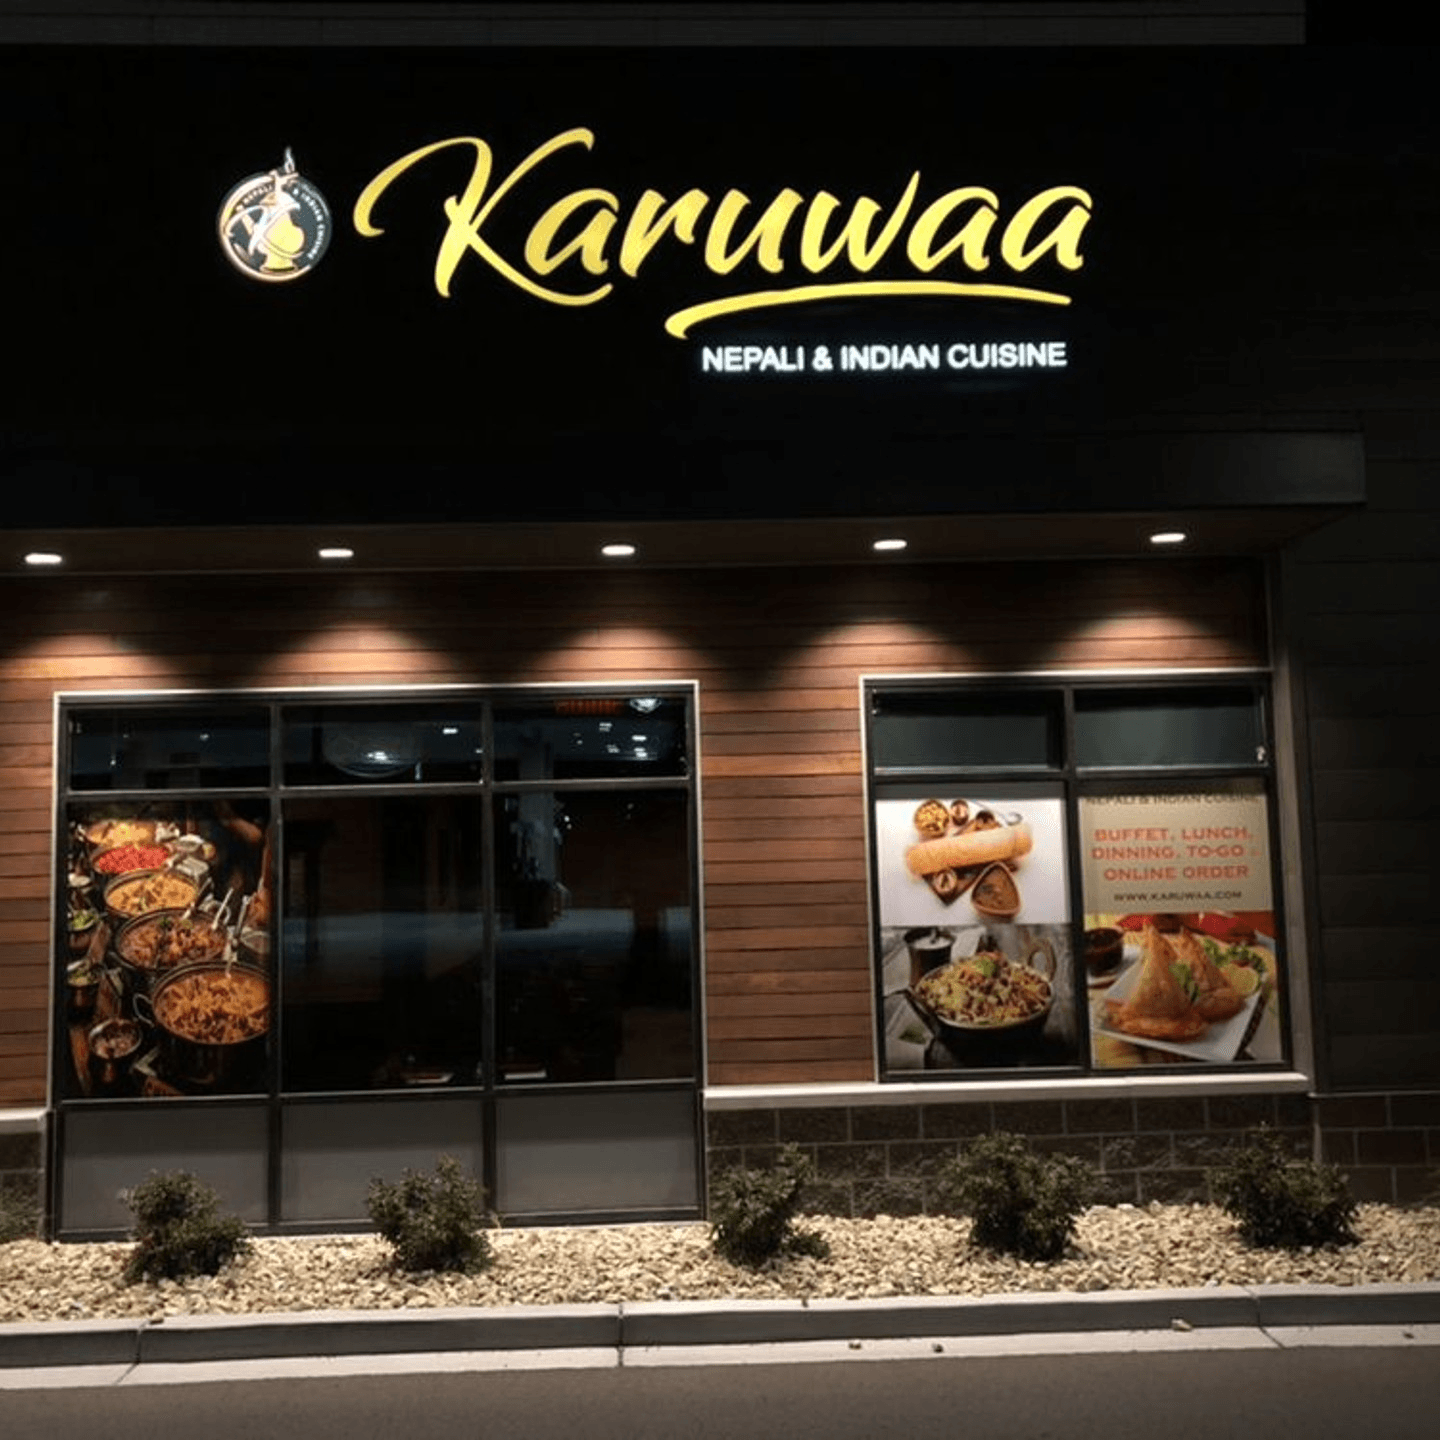 Welcome to Karuwaa Nepali & Indian Cuisine